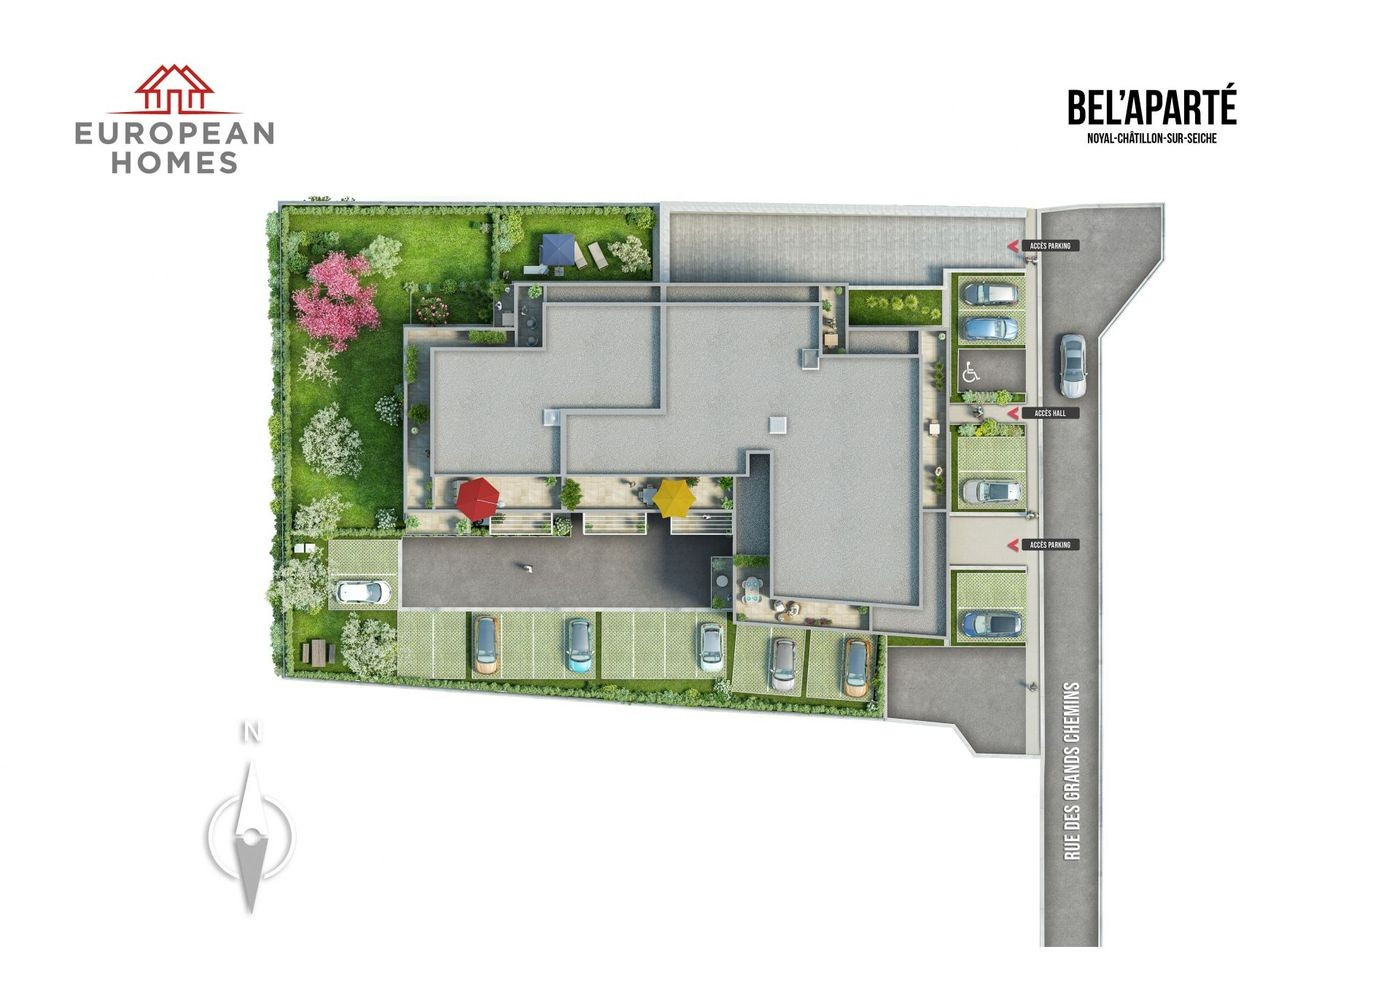 
                                                Vente
                                                 NEUF  T3 61 m² + TERRASSE 21 M²  NOYAL CHATILLON